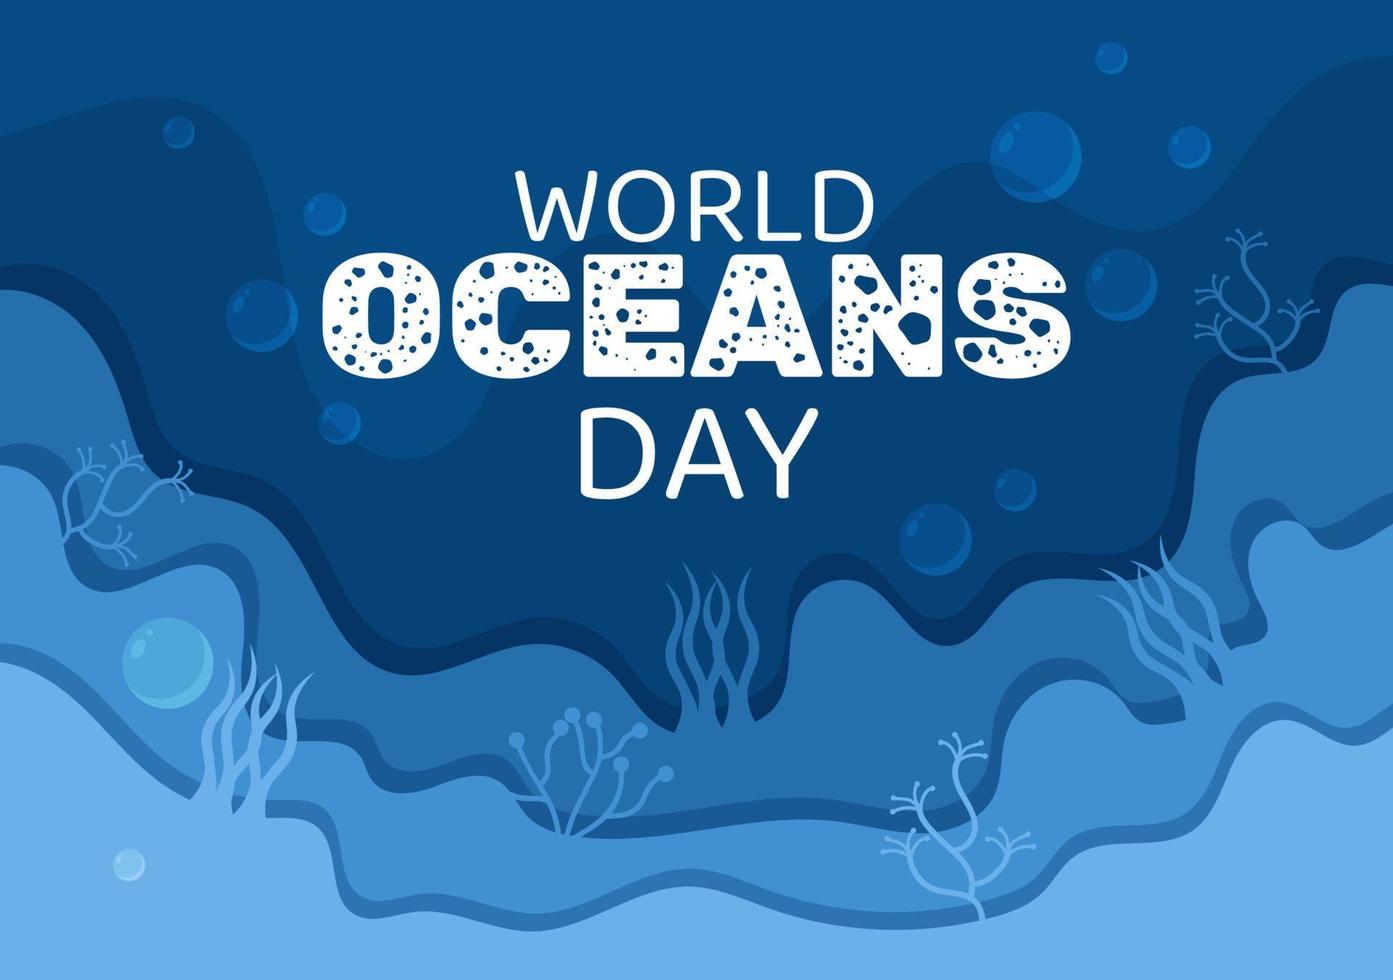 ilustración de dibujos animados del día mundial del océano con paisajes submarinos, varios peces, corales y plantas marinas dedicadas a ayudar a proteger o preservar vector